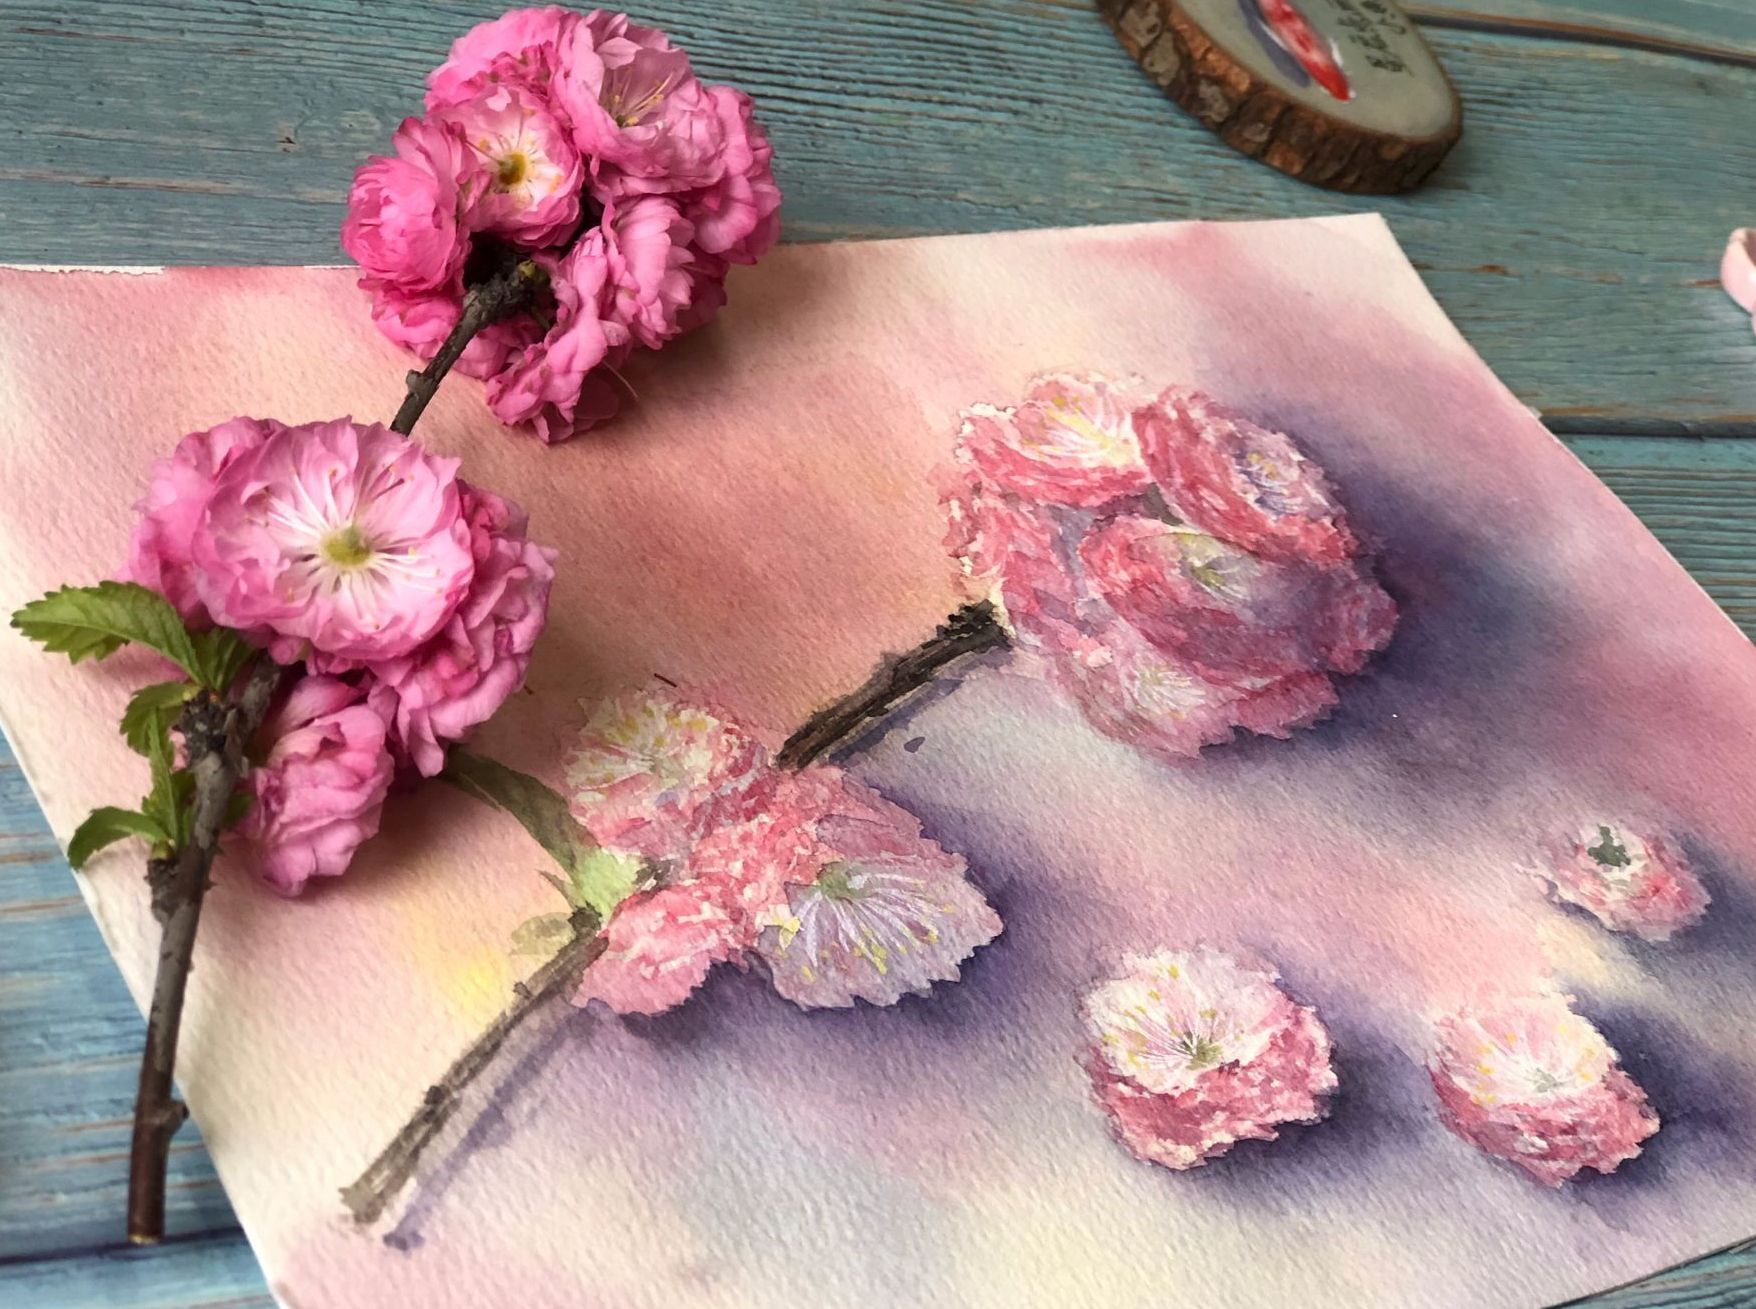 天气暖和起来，各种花朵也要竞相开放了，今天画的粉色碧桃花同样取材于画室外面的土坡。今天就要用水彩来画一次碧桃图！